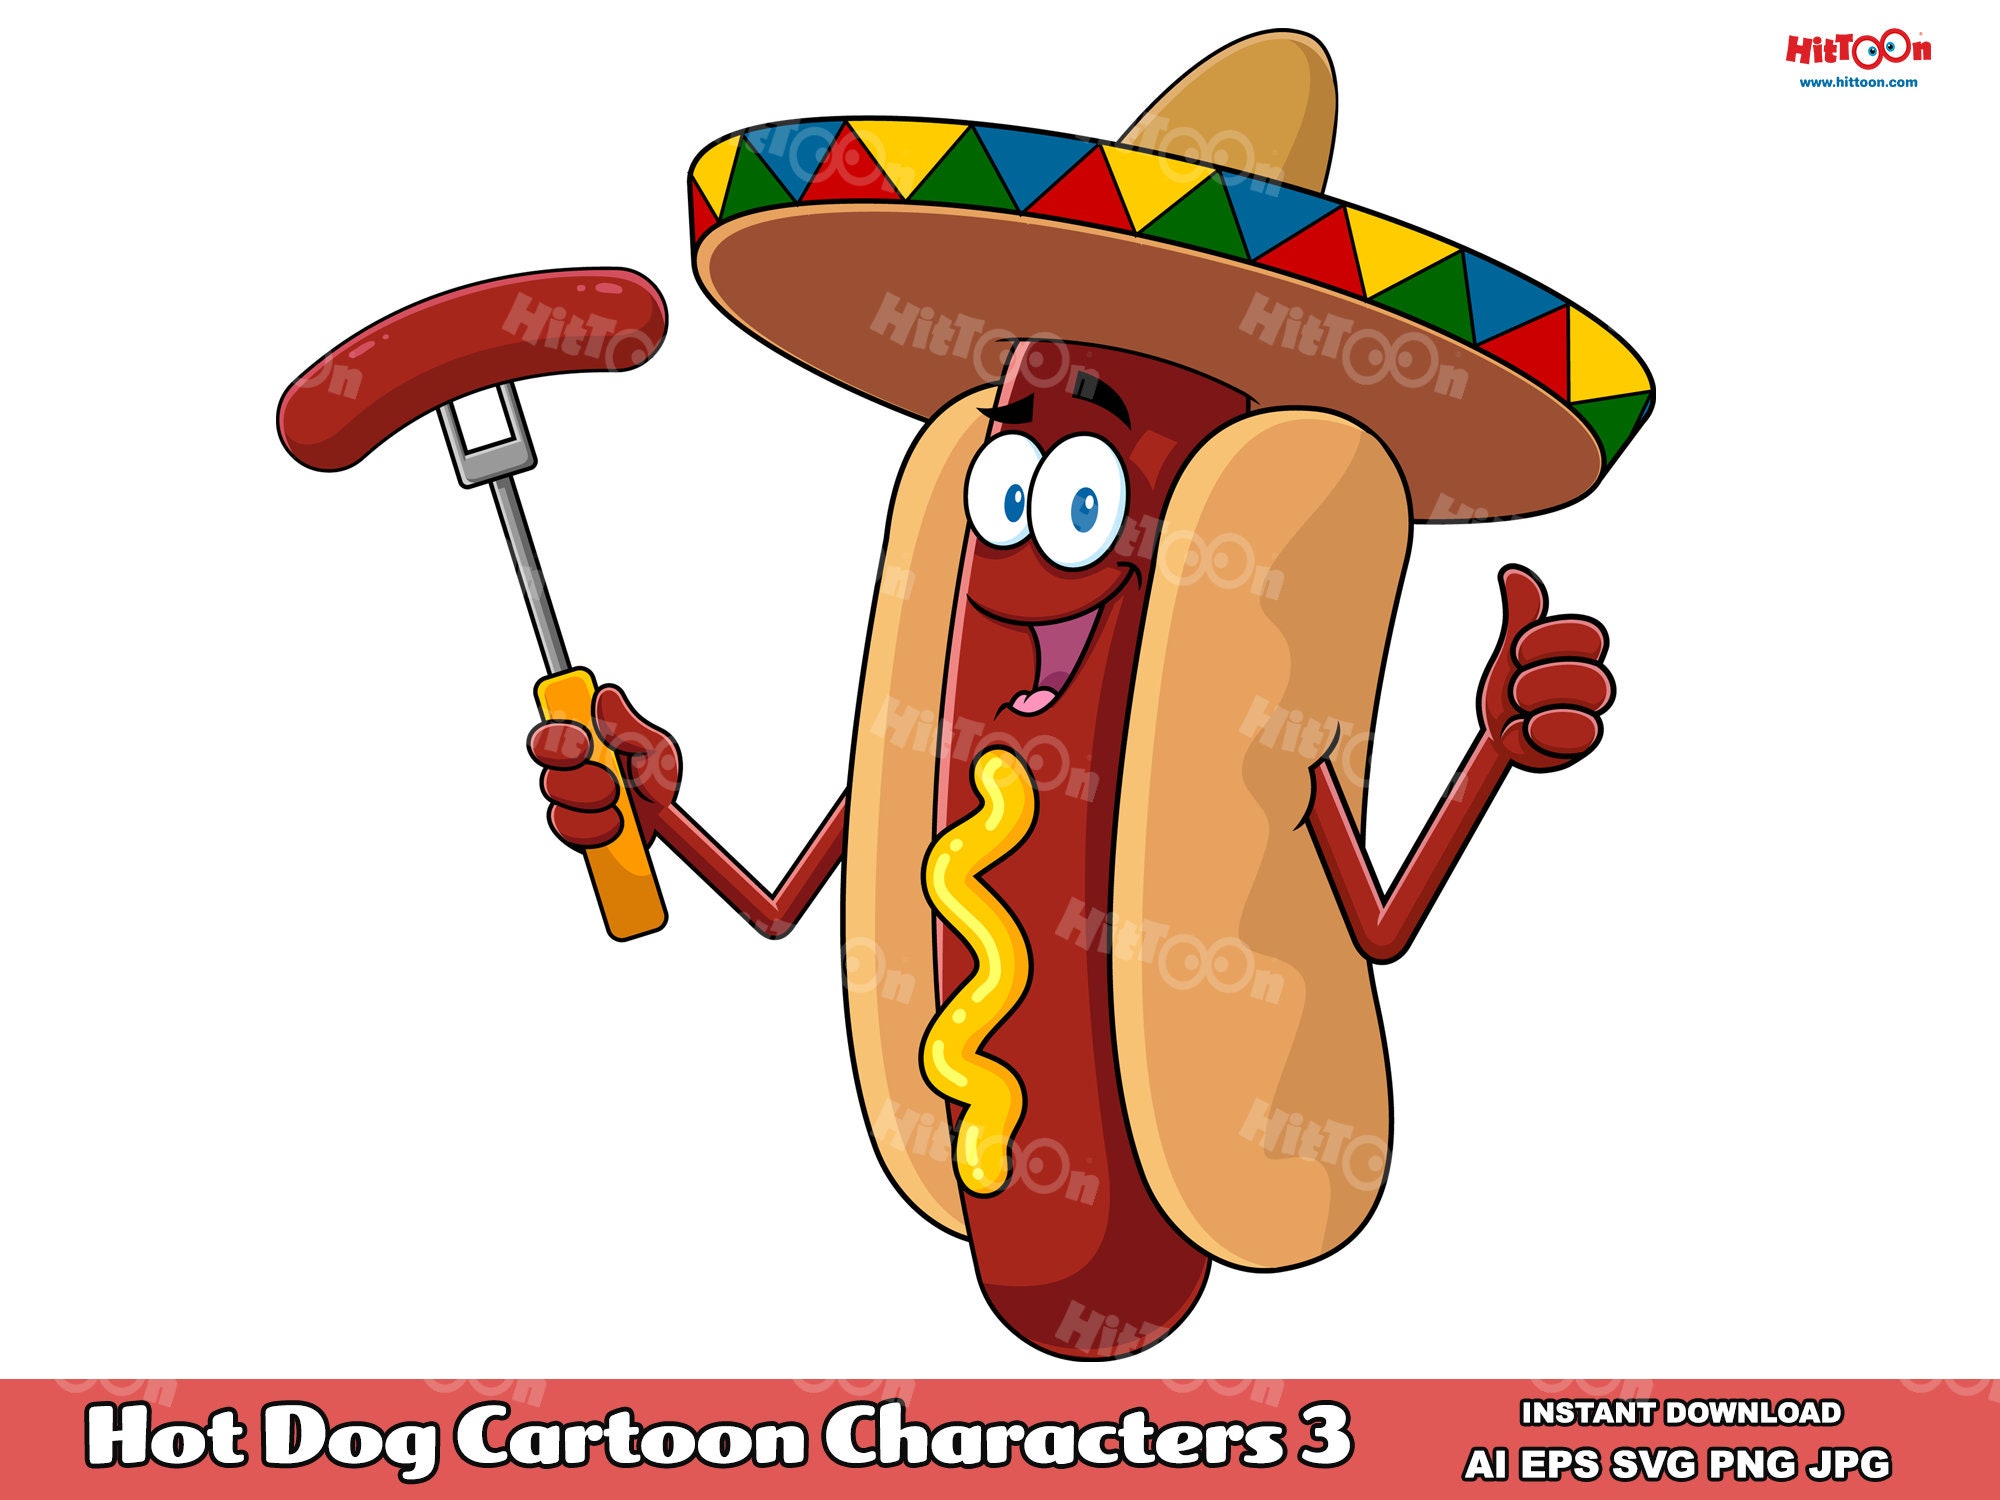 Hot Dog Cartoon Mascot Characters 3. Digital Clip Art Vector 